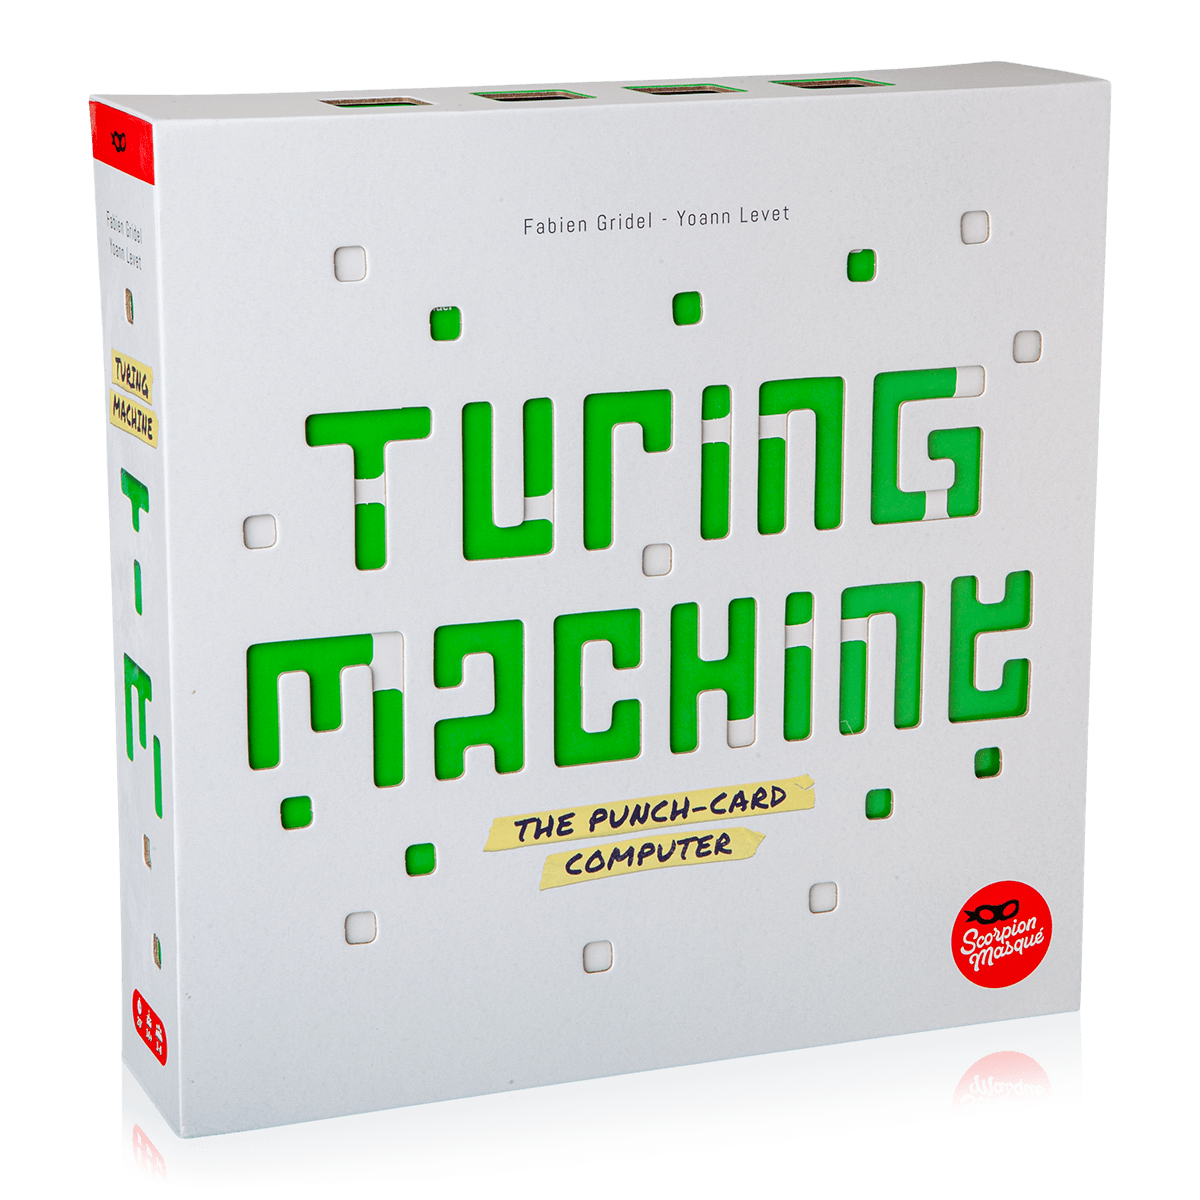 Kickstarter Alert: Program a Mechanical Computer With 'Turing